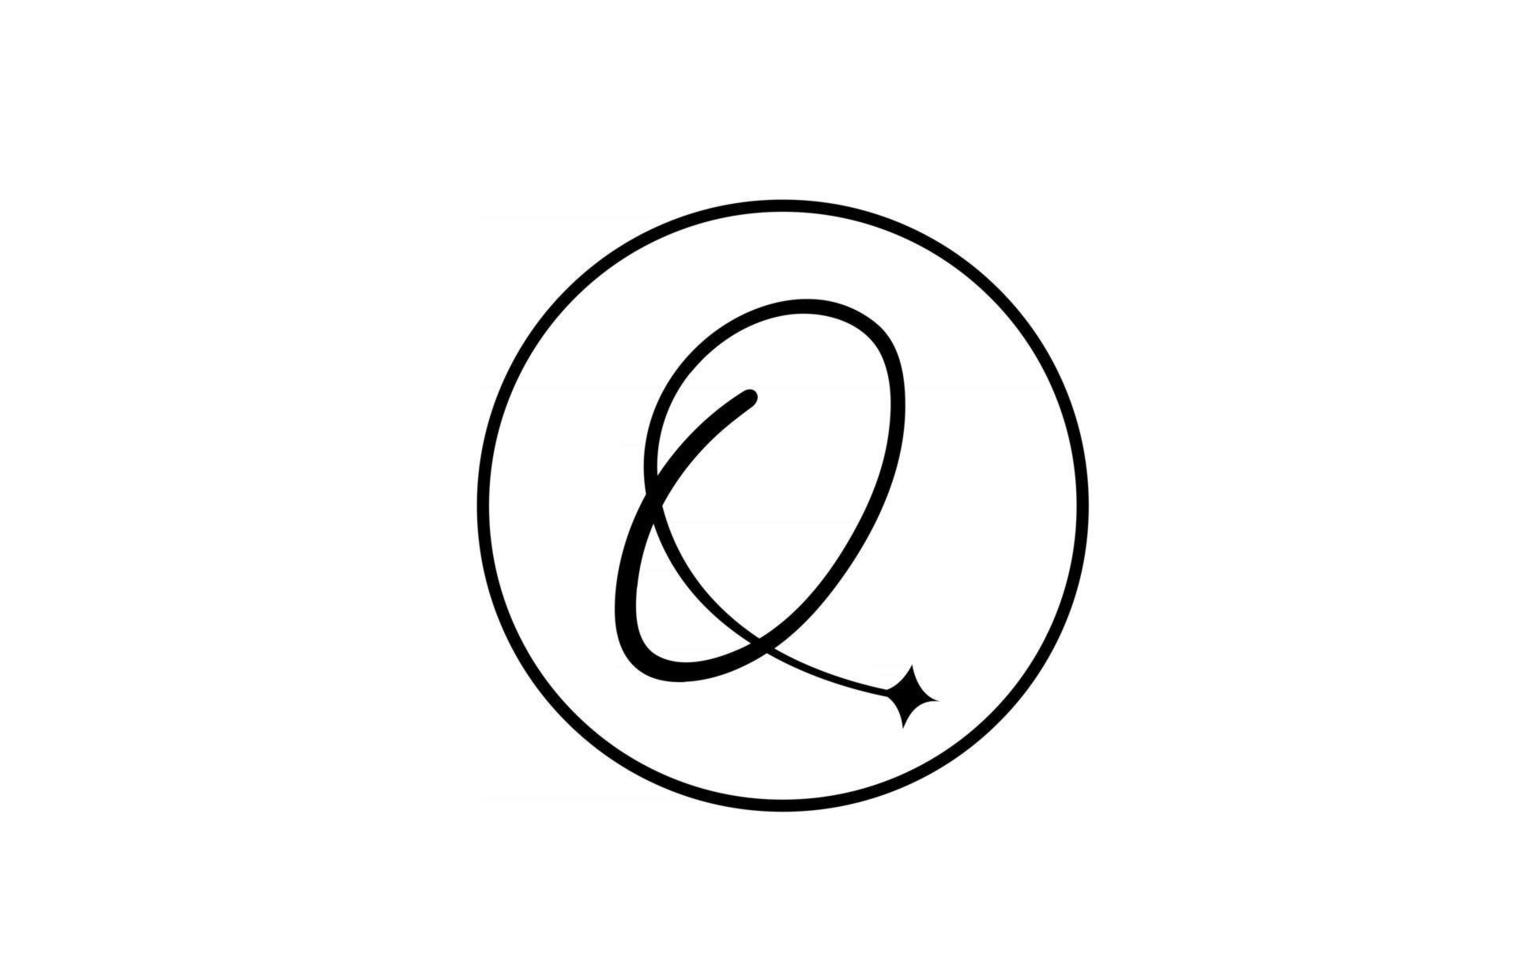 q alfabet letter logo voor zaken met ster en cirkel. eenvoudige elegante belettering voor bedrijf. huisstijl branding icoon ontwerp in wit en zwart vector